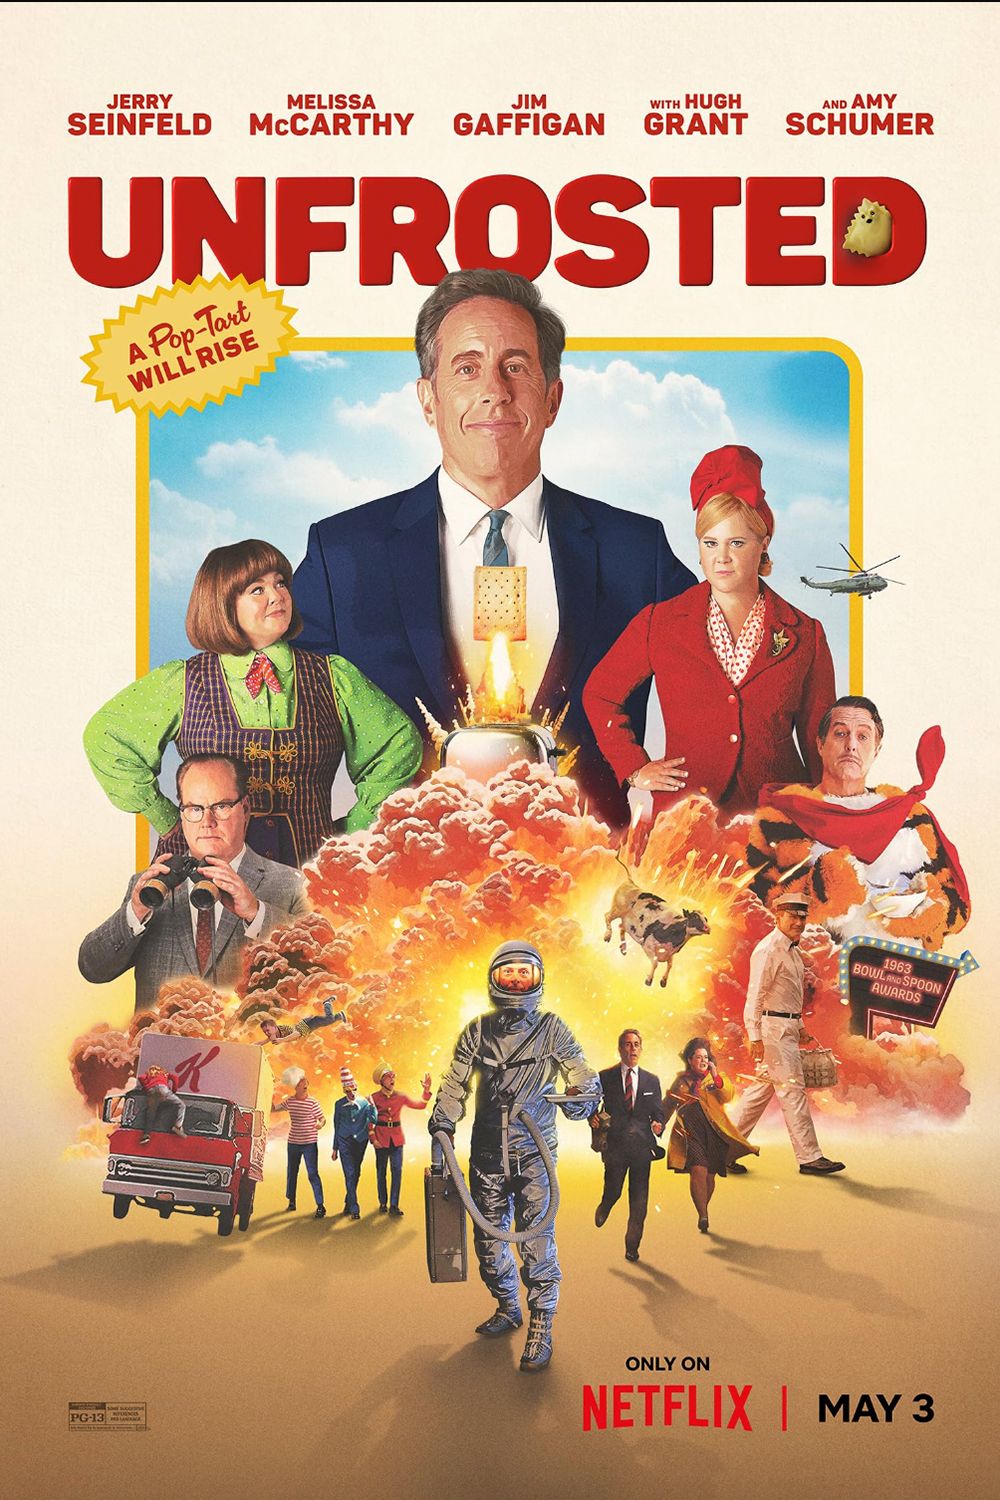 Pôster do filme descongelado mostrando Jerry Seinfeld, Melissa McCarthy, Jim Gaffigan, Hugh Grant e Amy Schumer ao lado de uma explosão e uma vaca voadora